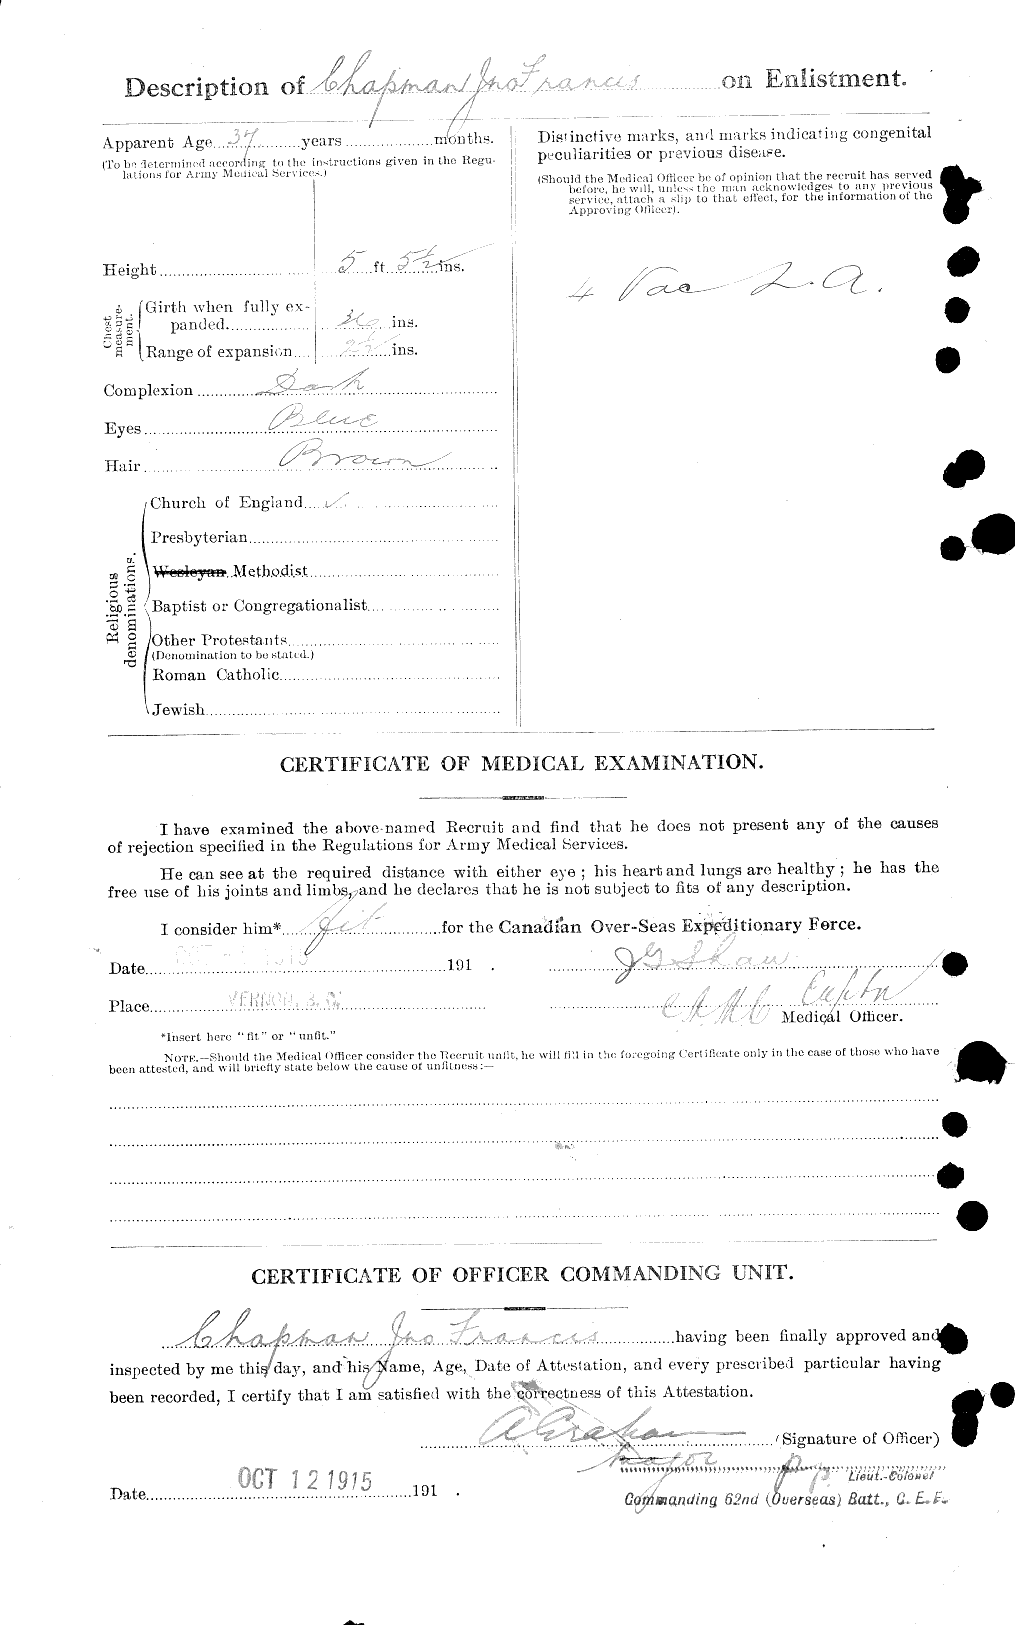 Dossiers du Personnel de la Première Guerre mondiale - CEC 014110b